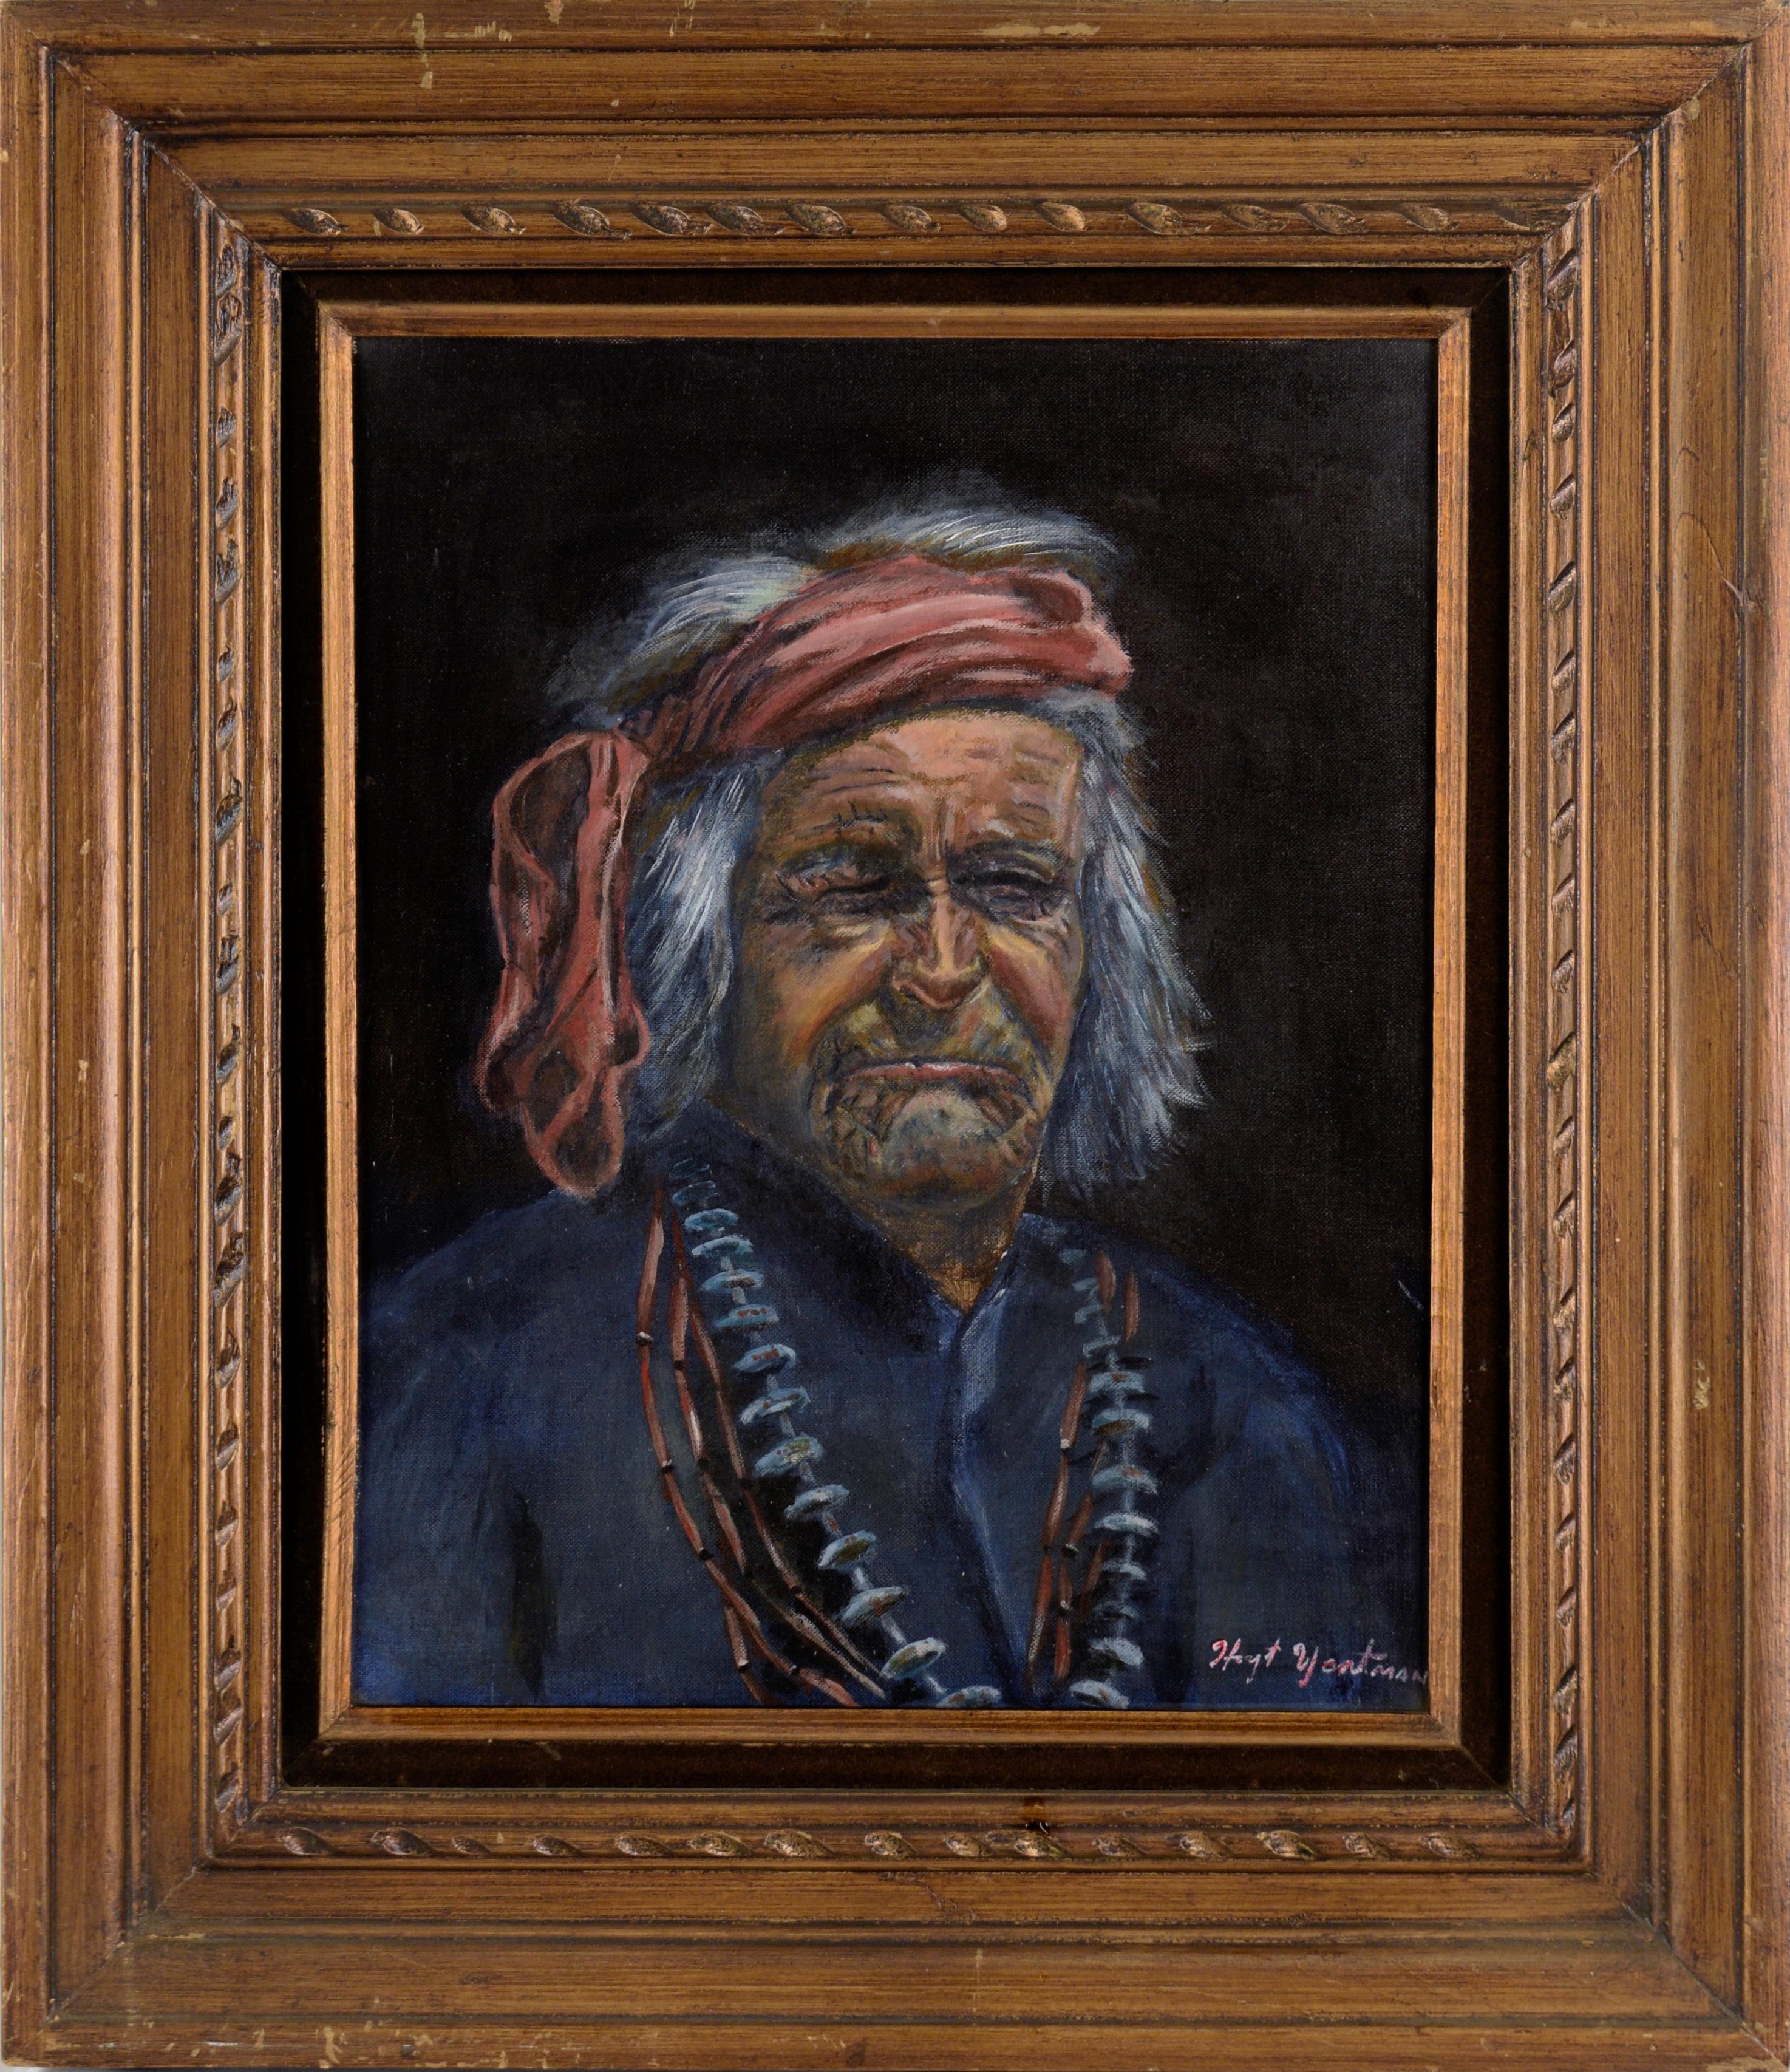 Hoyt Yeatman Jr. Portrait Painting - Portrait of a Native American Elder in oil on Artist's Board